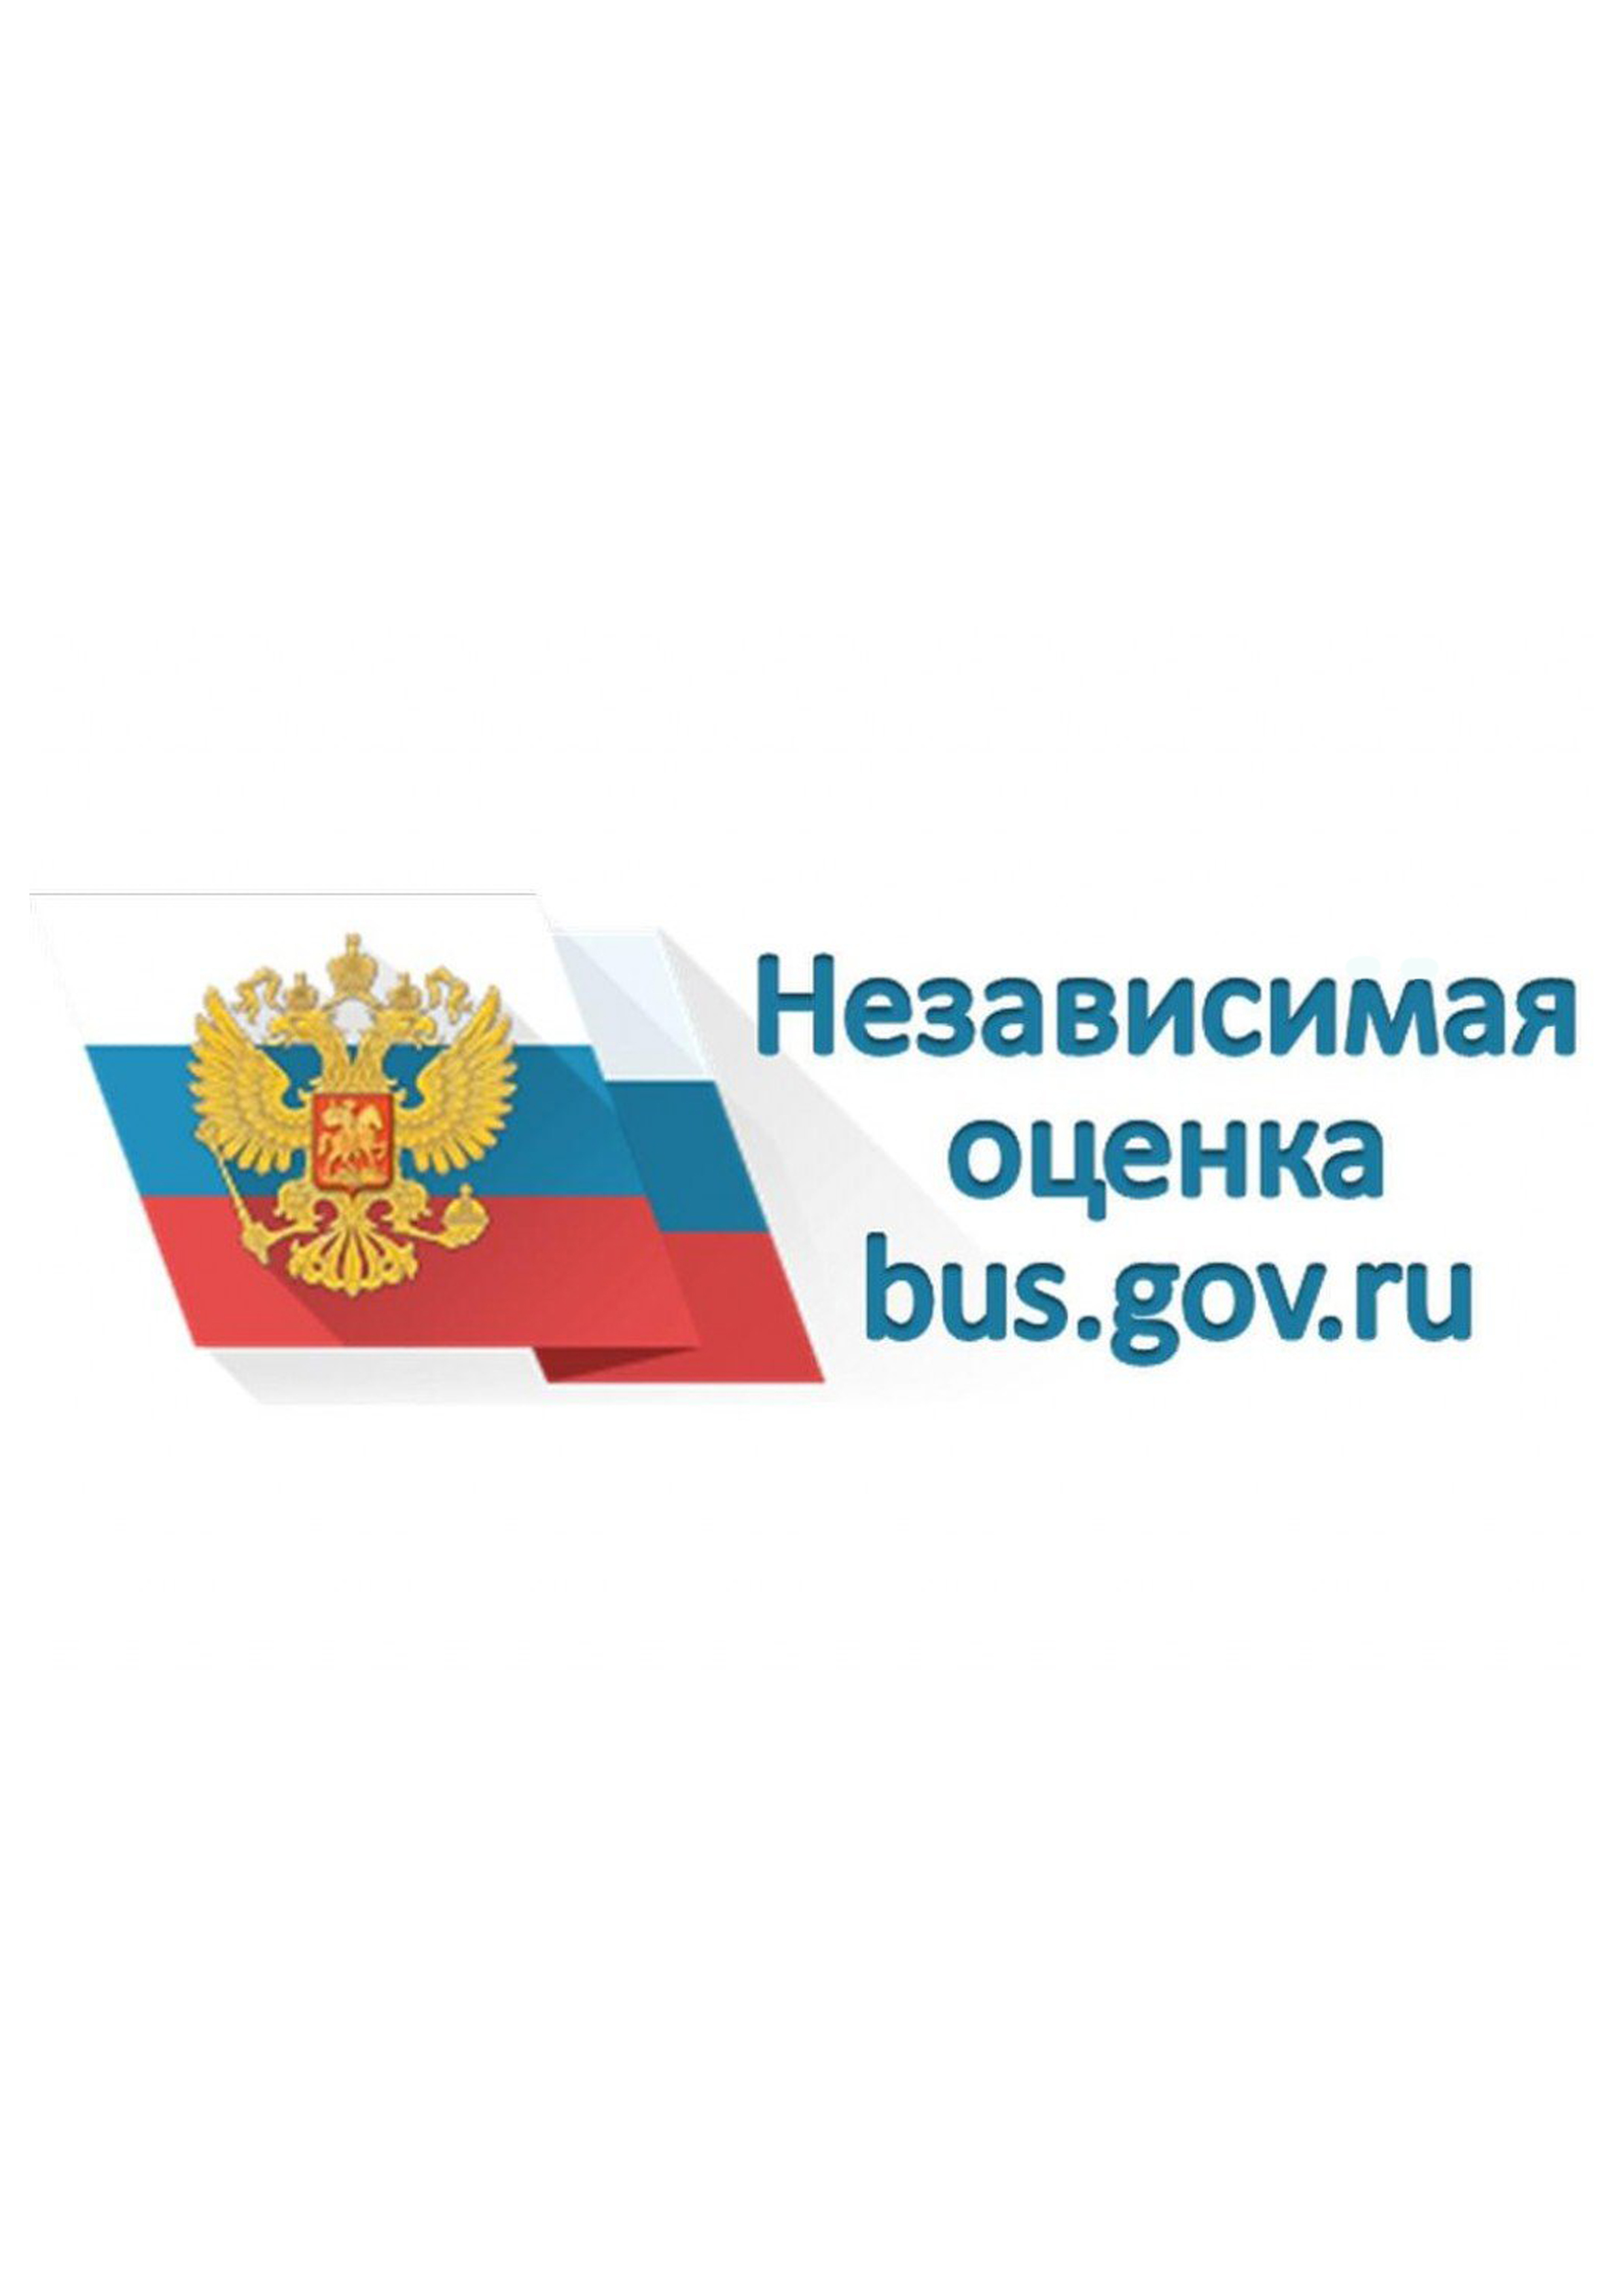 Сайт бас гоф ру. Бас гов. Баннер бас гов. Логотип сайта Bus gov. Независимая оценка качества лого.